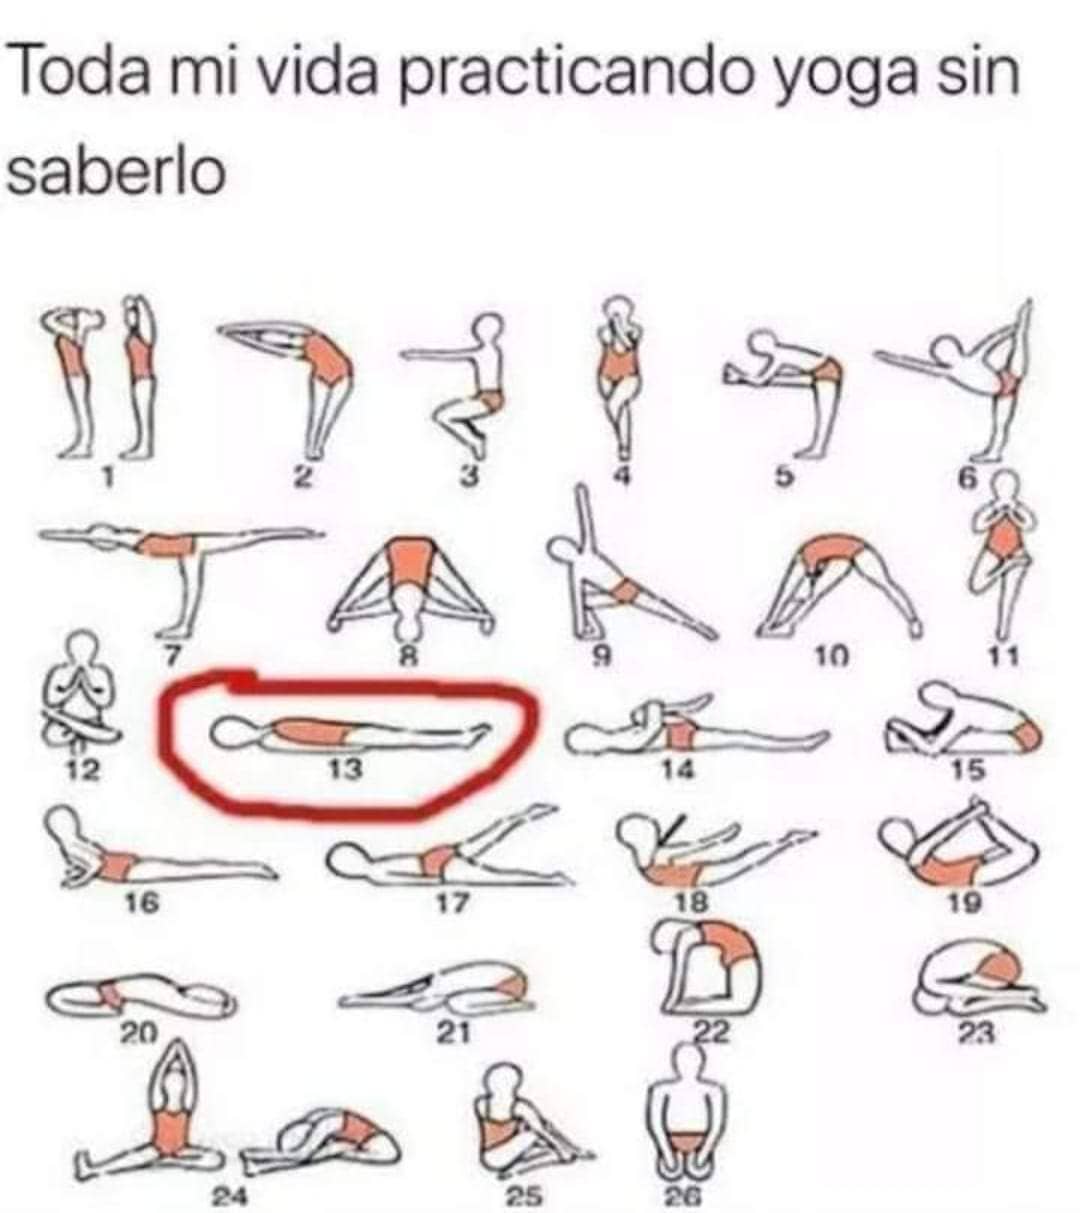 Toda mi vida practicando yoga sin saberlo.